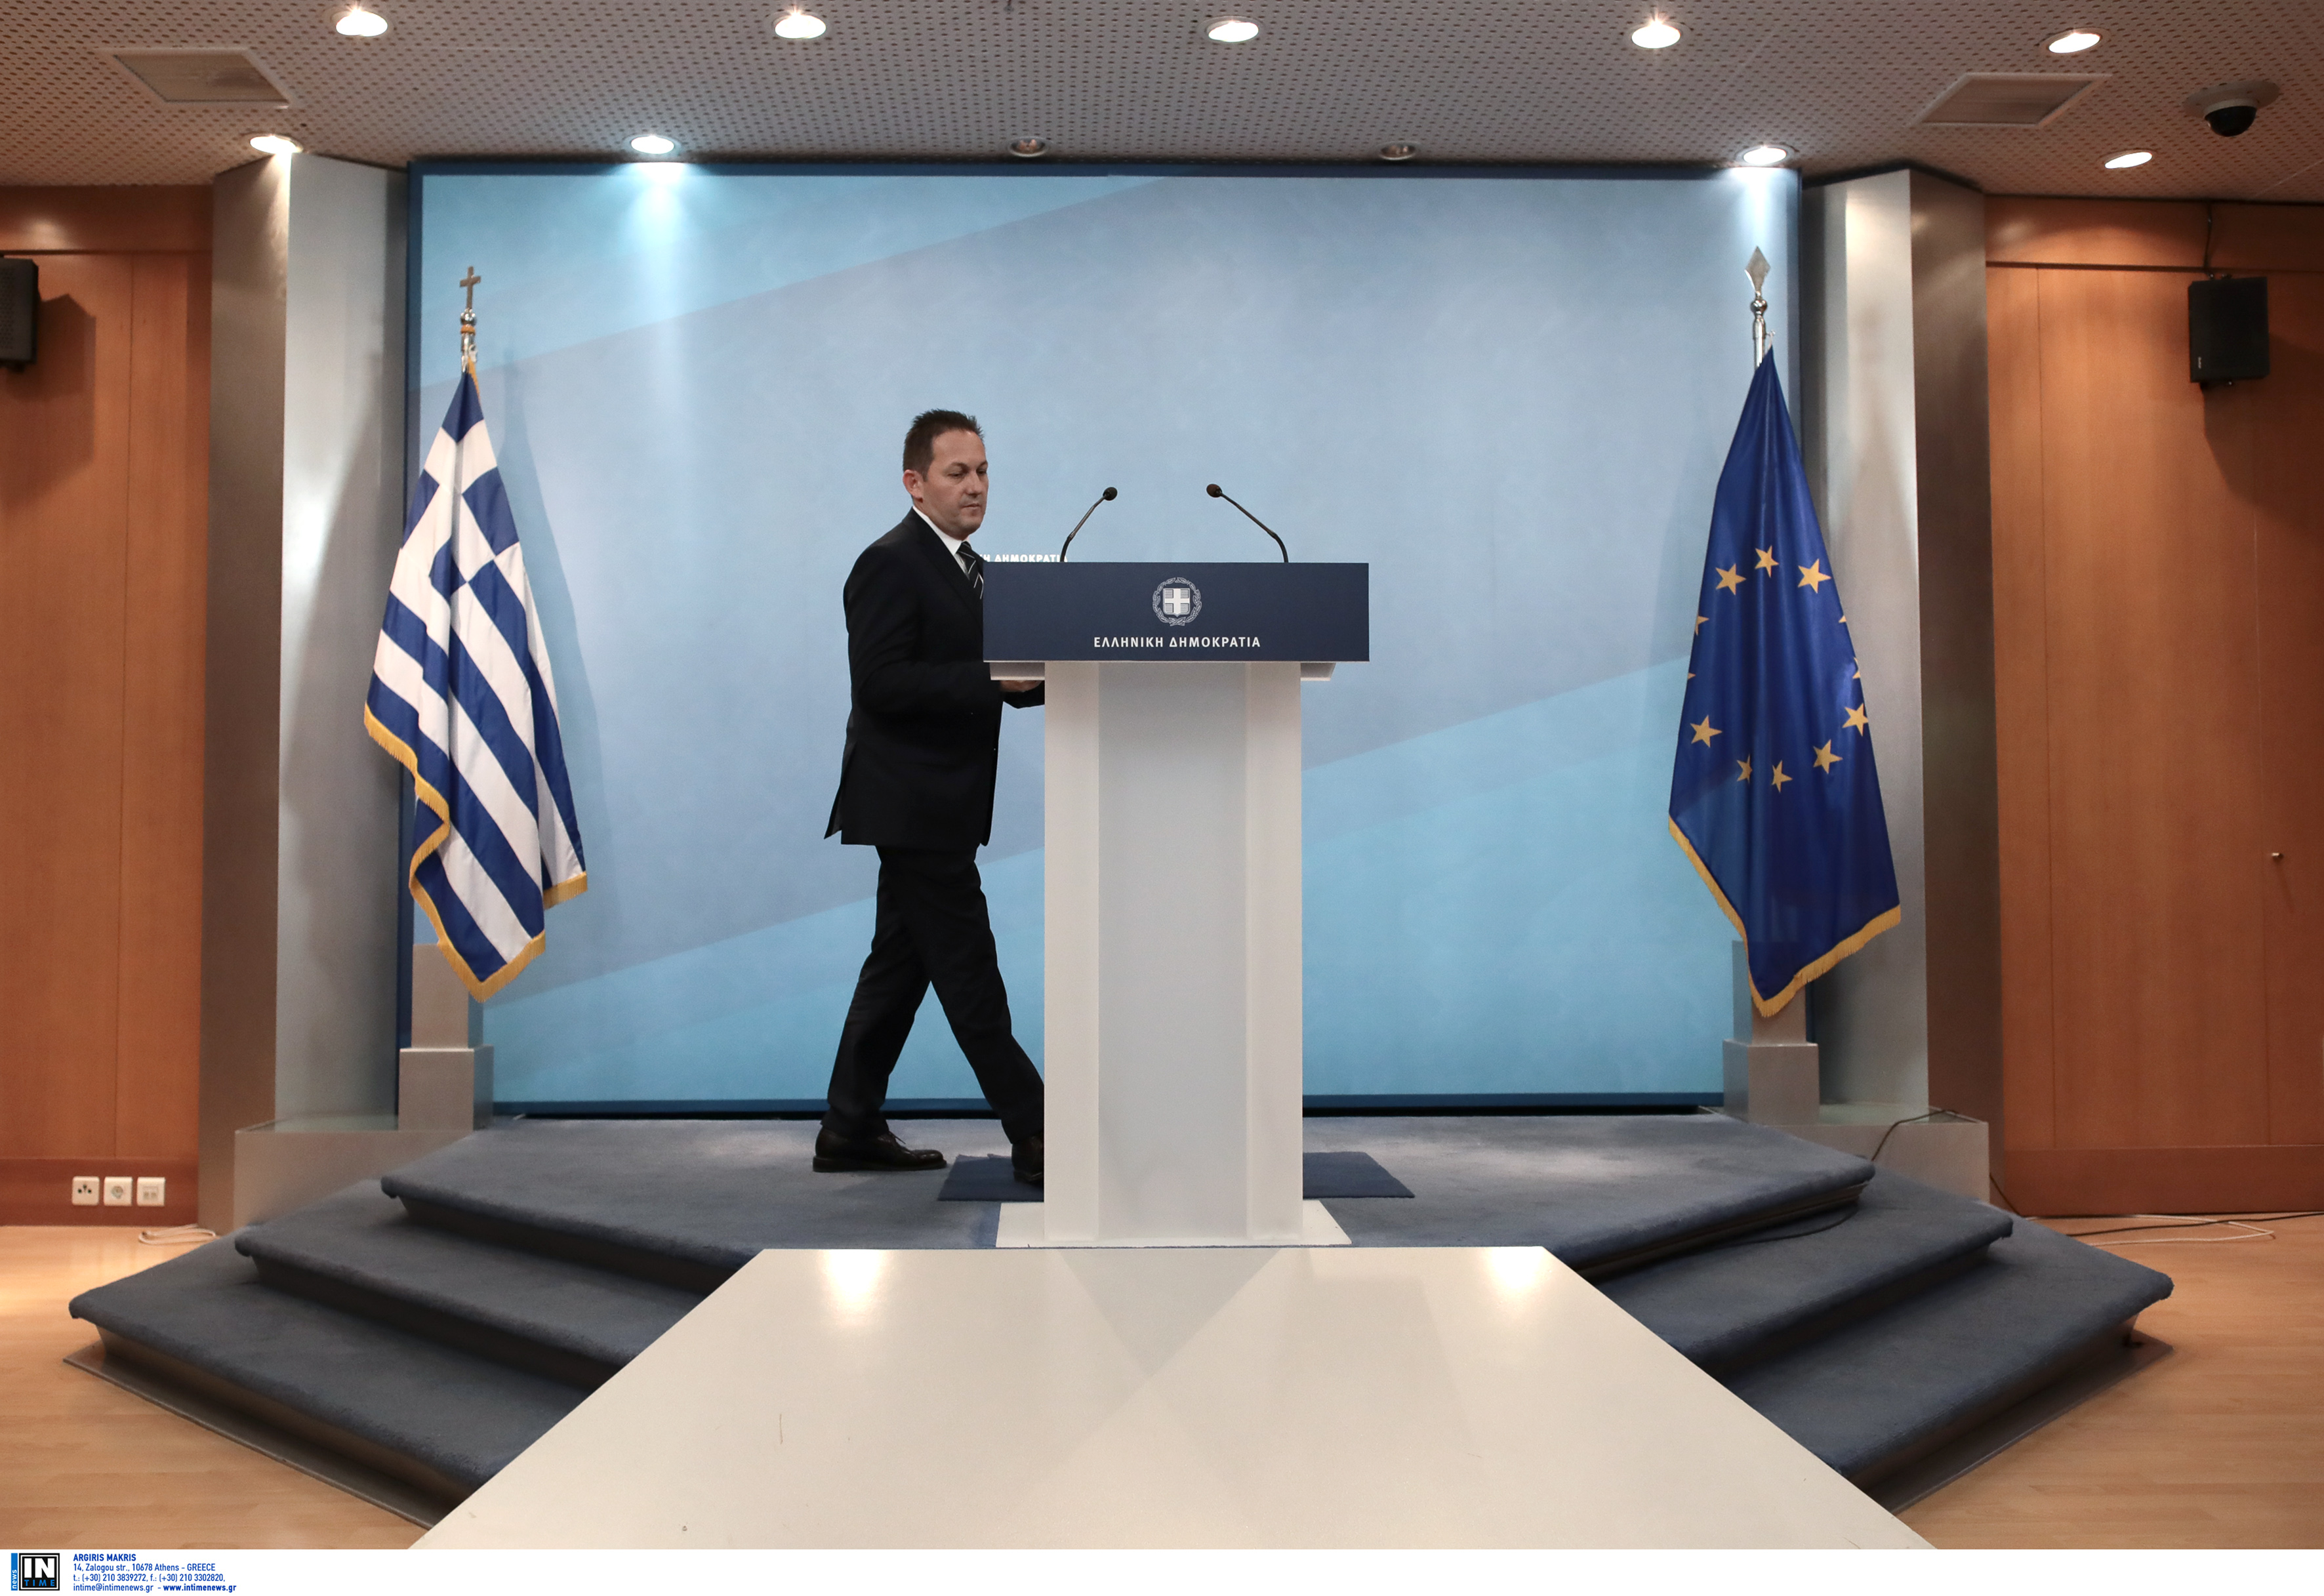 Πέτσας: Σοβαρότης μηδέν από τον ΣΥΡΙΖΑ, να ζητήσουν συγγνώμη ο Τσίπρας και οι βουλευτές του